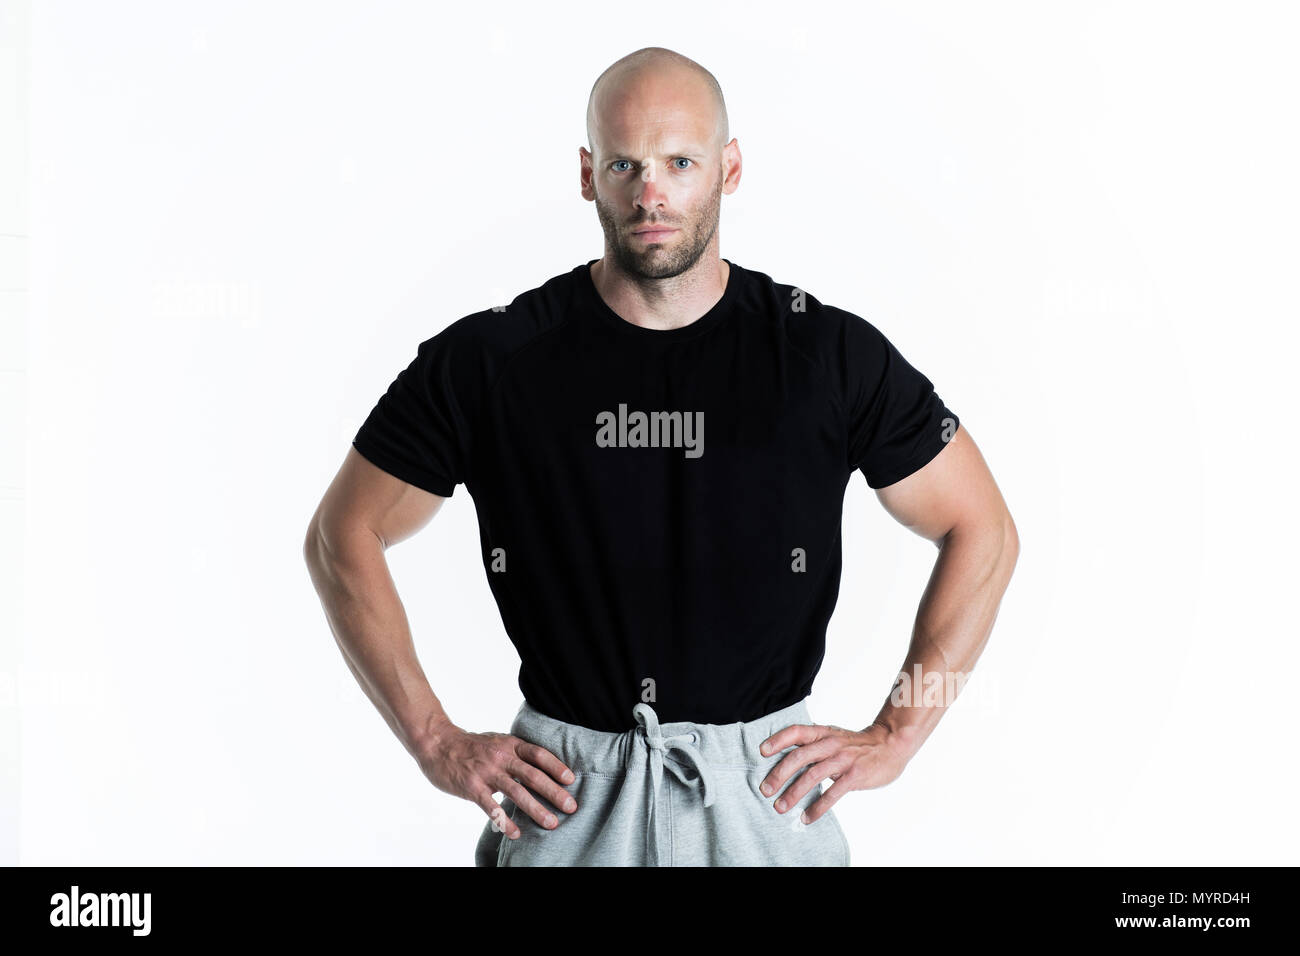 Athletischen Personal Trainer posiert auf weißem Hintergrund Stockfoto